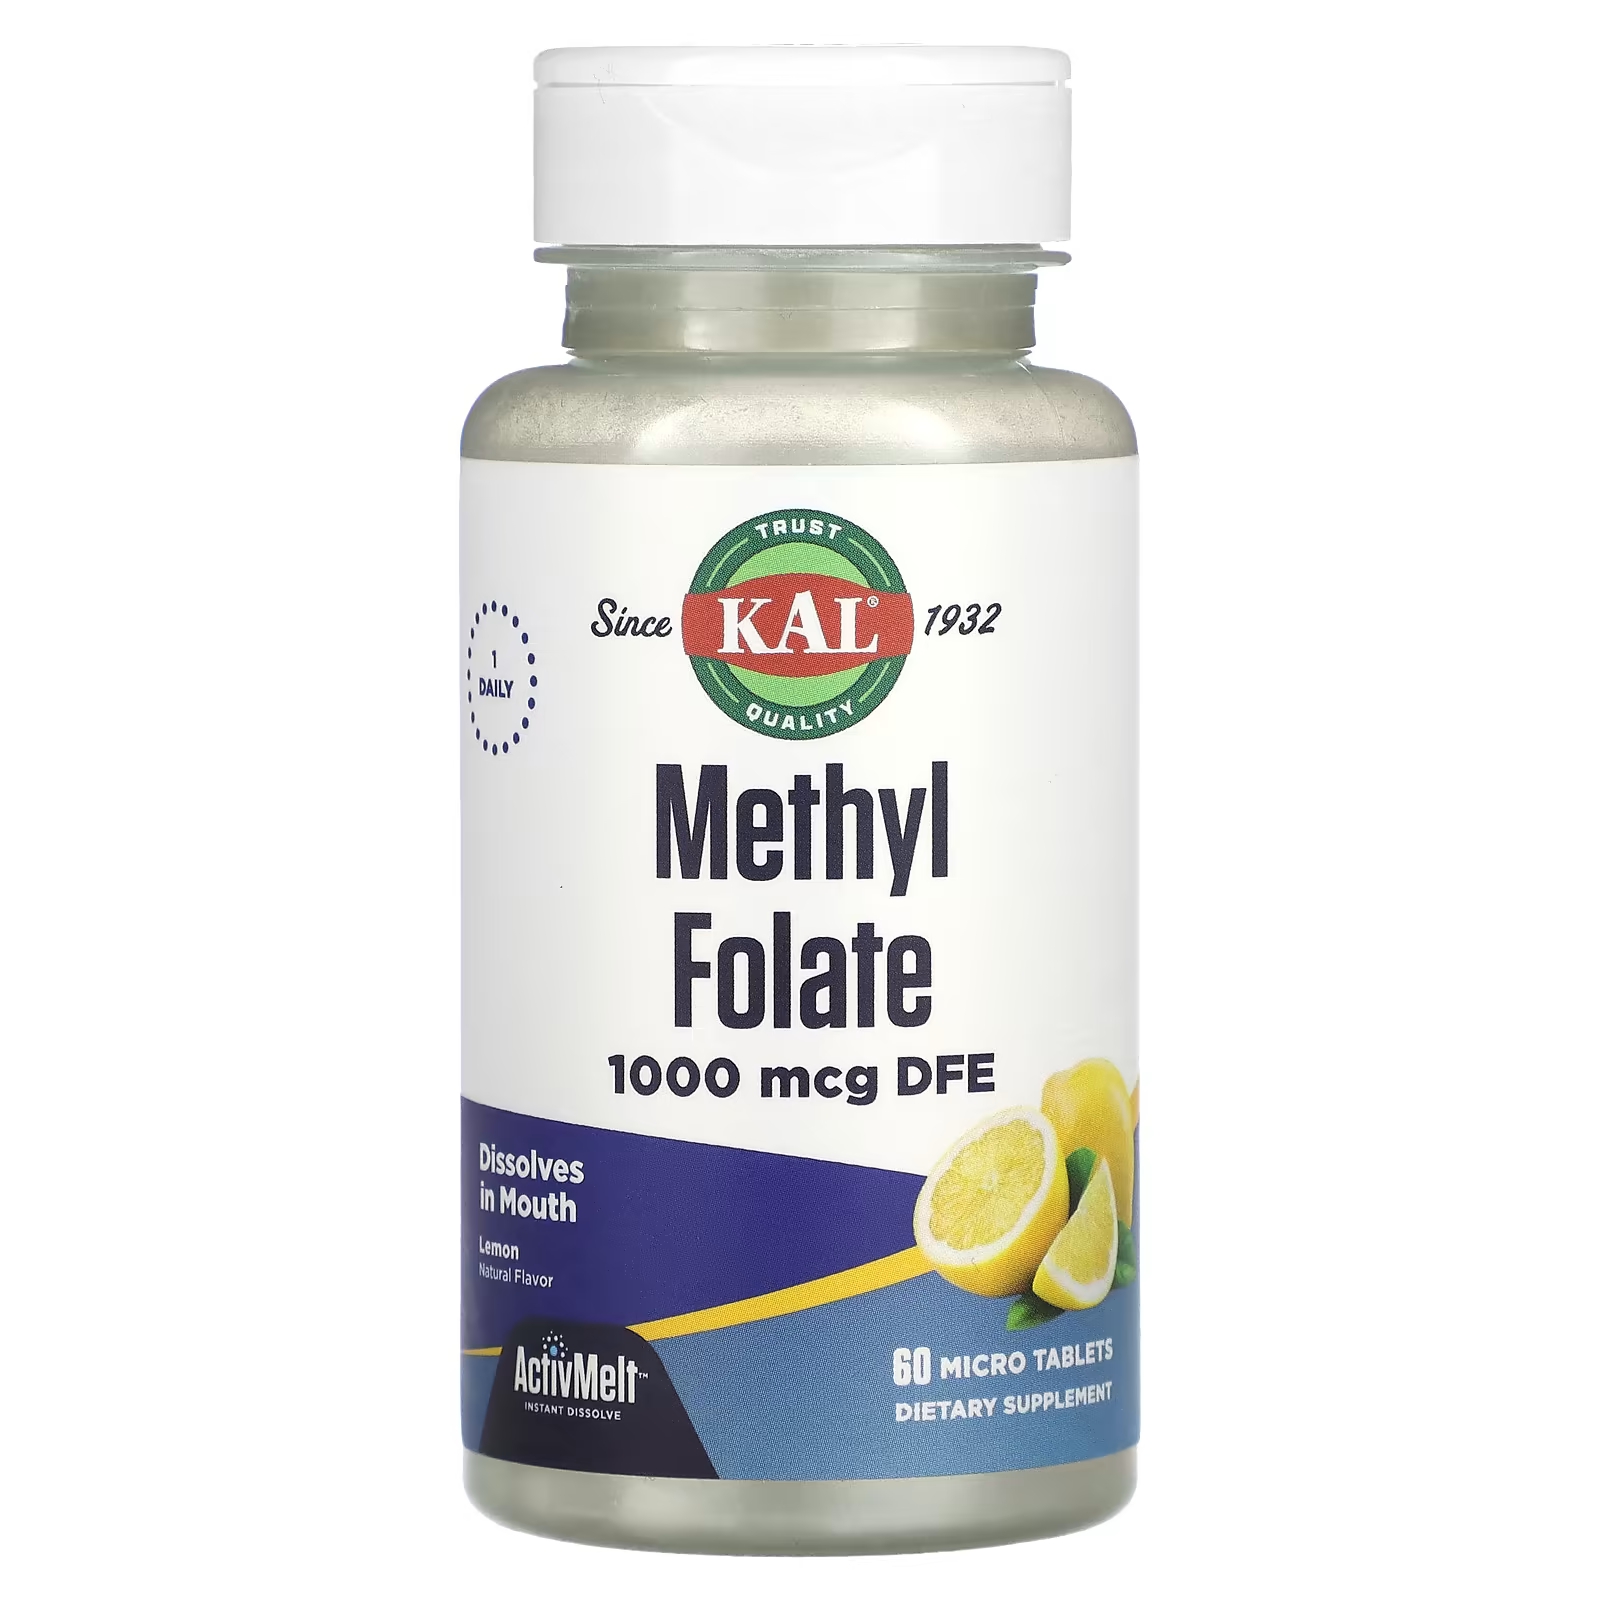 Биологически активная добавка KAL метилфолат, лимон, 1000 мкг., DFE, 60 микротаблеток